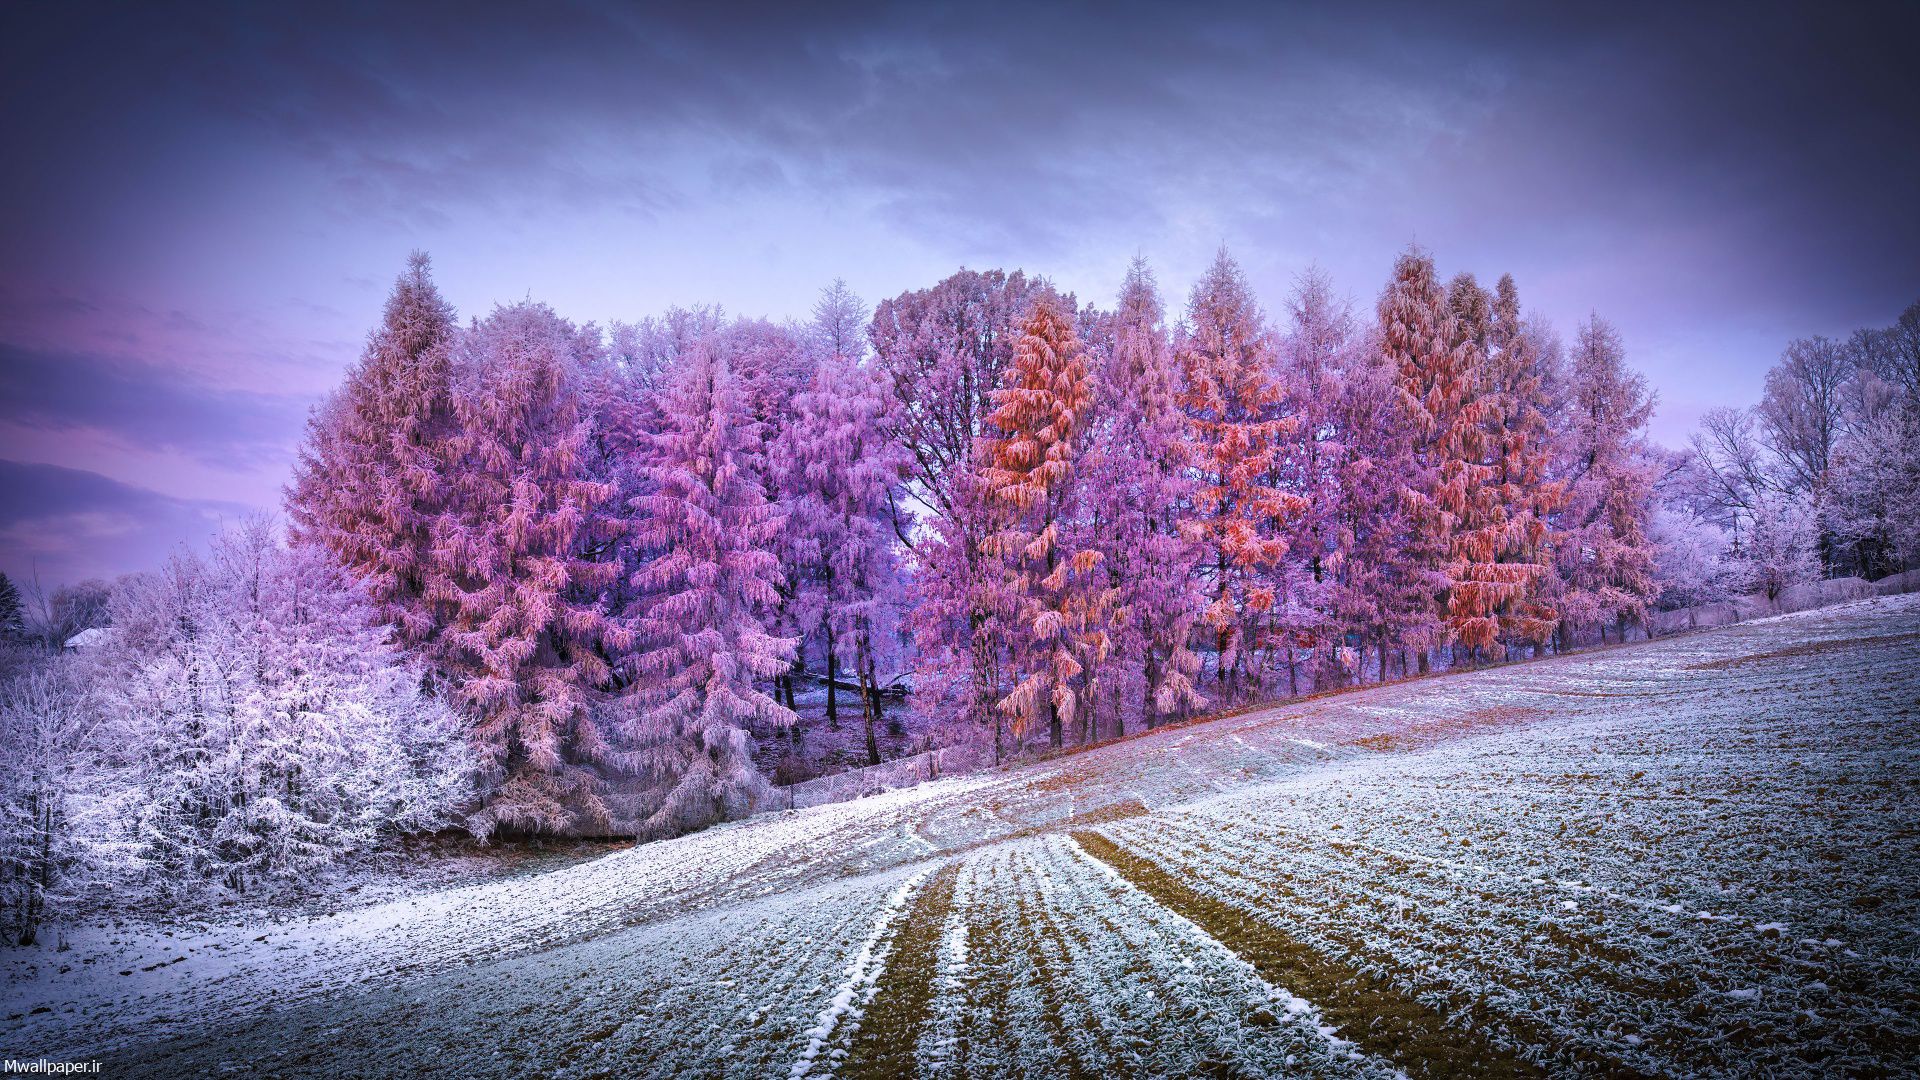 عکس با کیفیت جنگل در زمستان